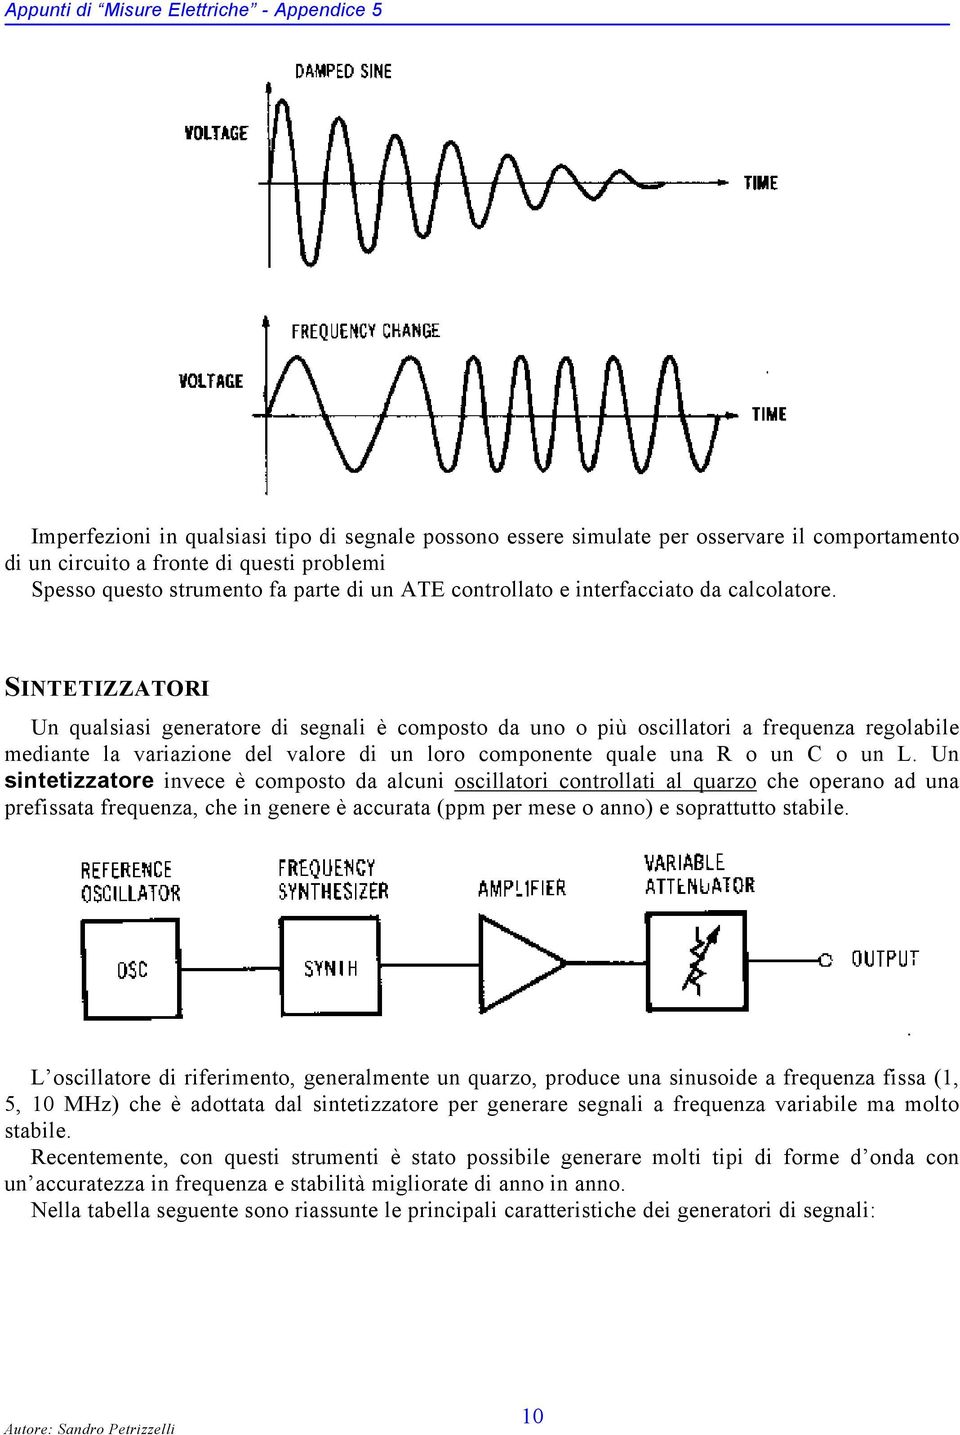 SINTETIZZATORI Un qualsiasi generatore di segnali è composto da uno o più oscillatori a frequenza regolabile mediante la variazione del valore di un loro componente quale una R o un C o un L.